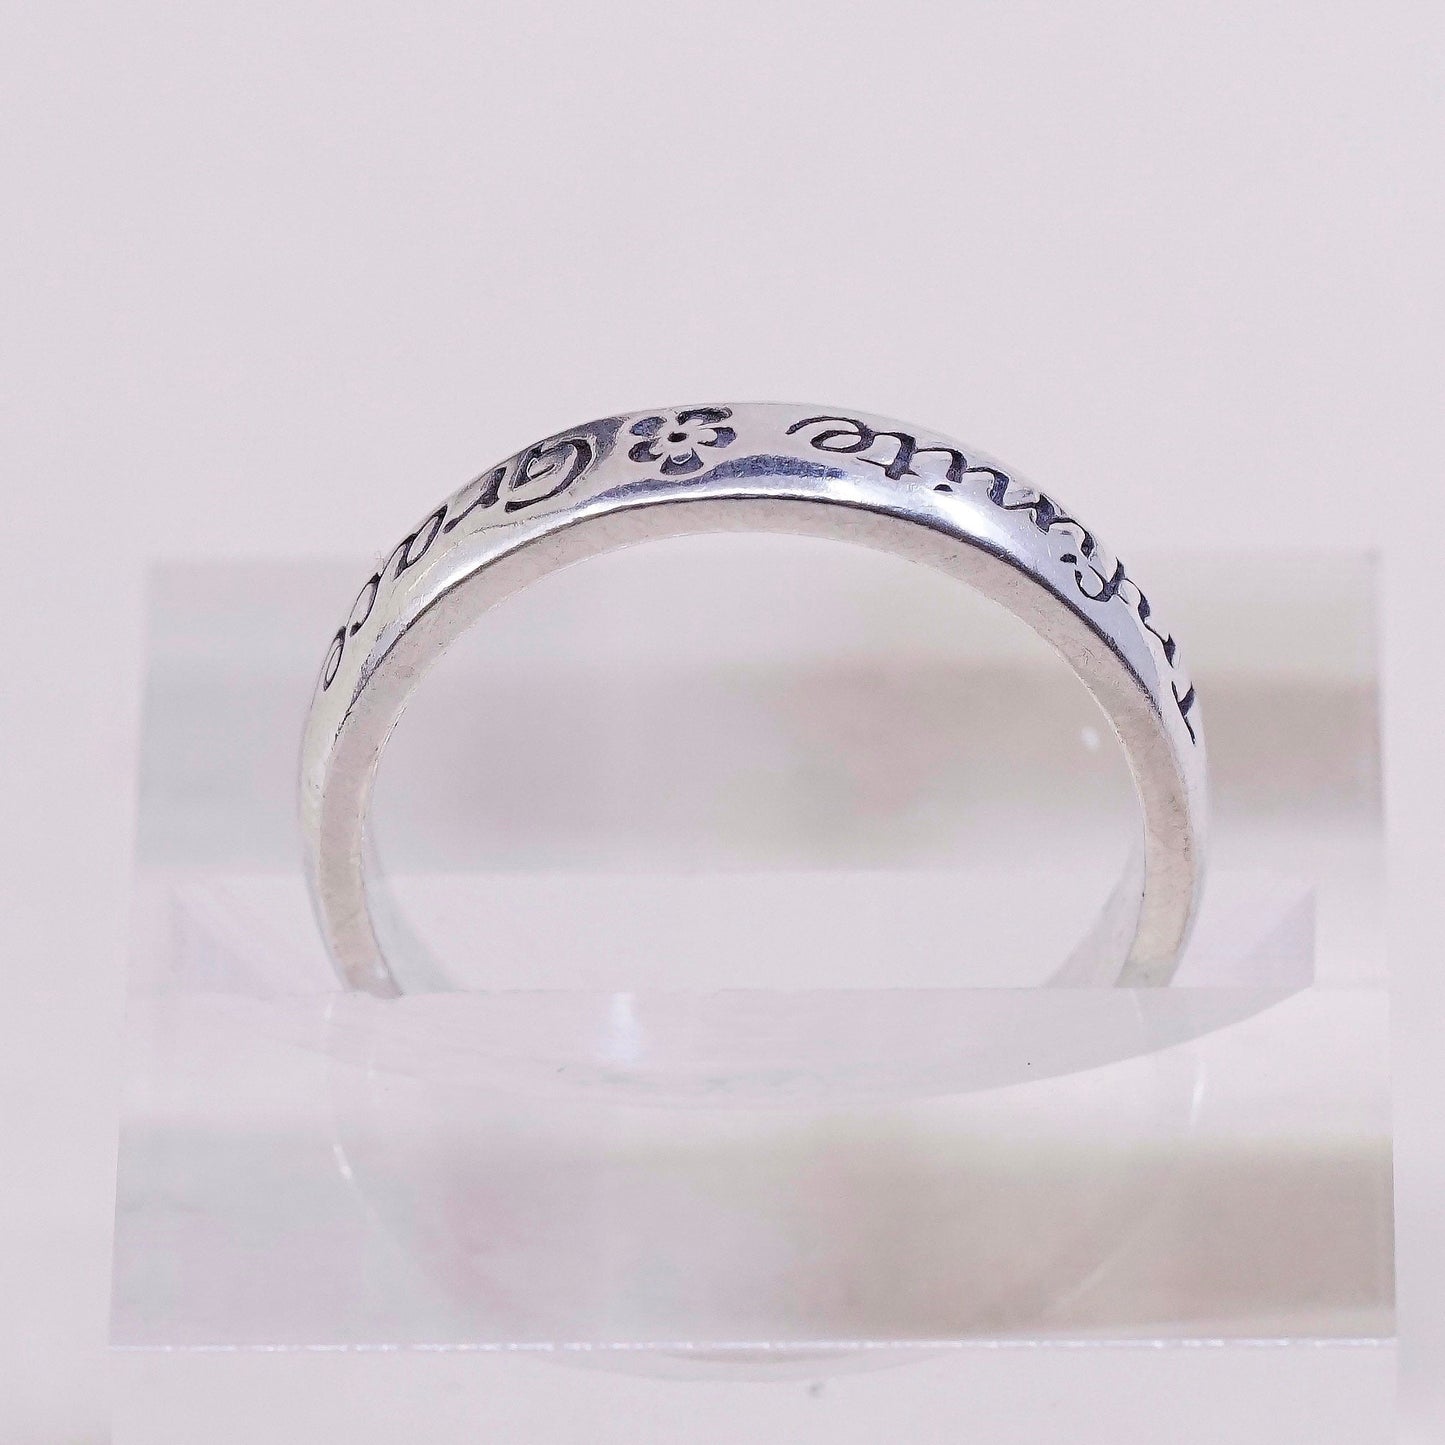 sz 8.25, vtg sterling silver handmade ring, 925 band, engraved “Infinite grace”